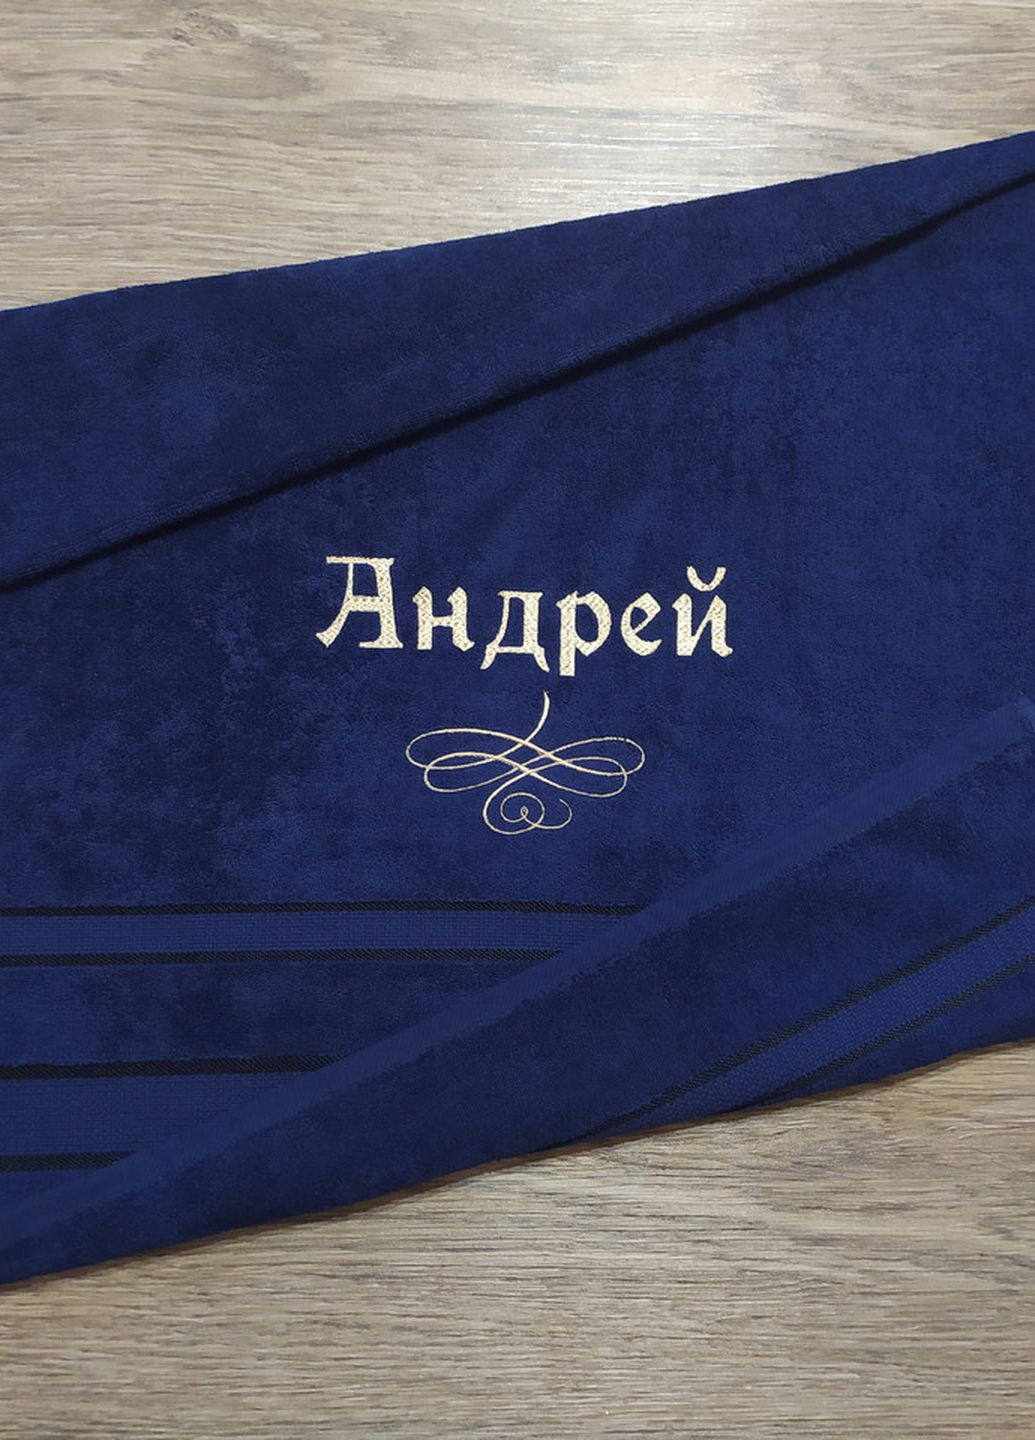 No Brand полотенце с именной вышивкой махровое банное 70*140 темно-синий андрей 04253 однотонный темно-синий производство - Украина